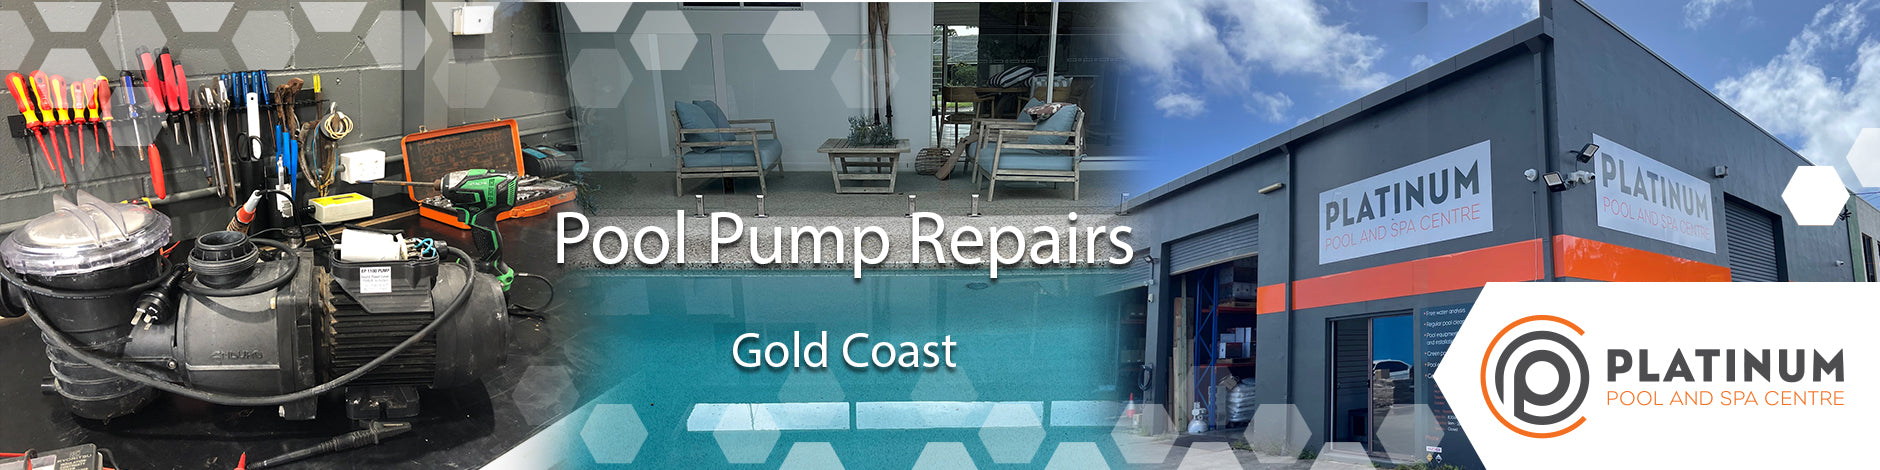 Pool Pump Repairs